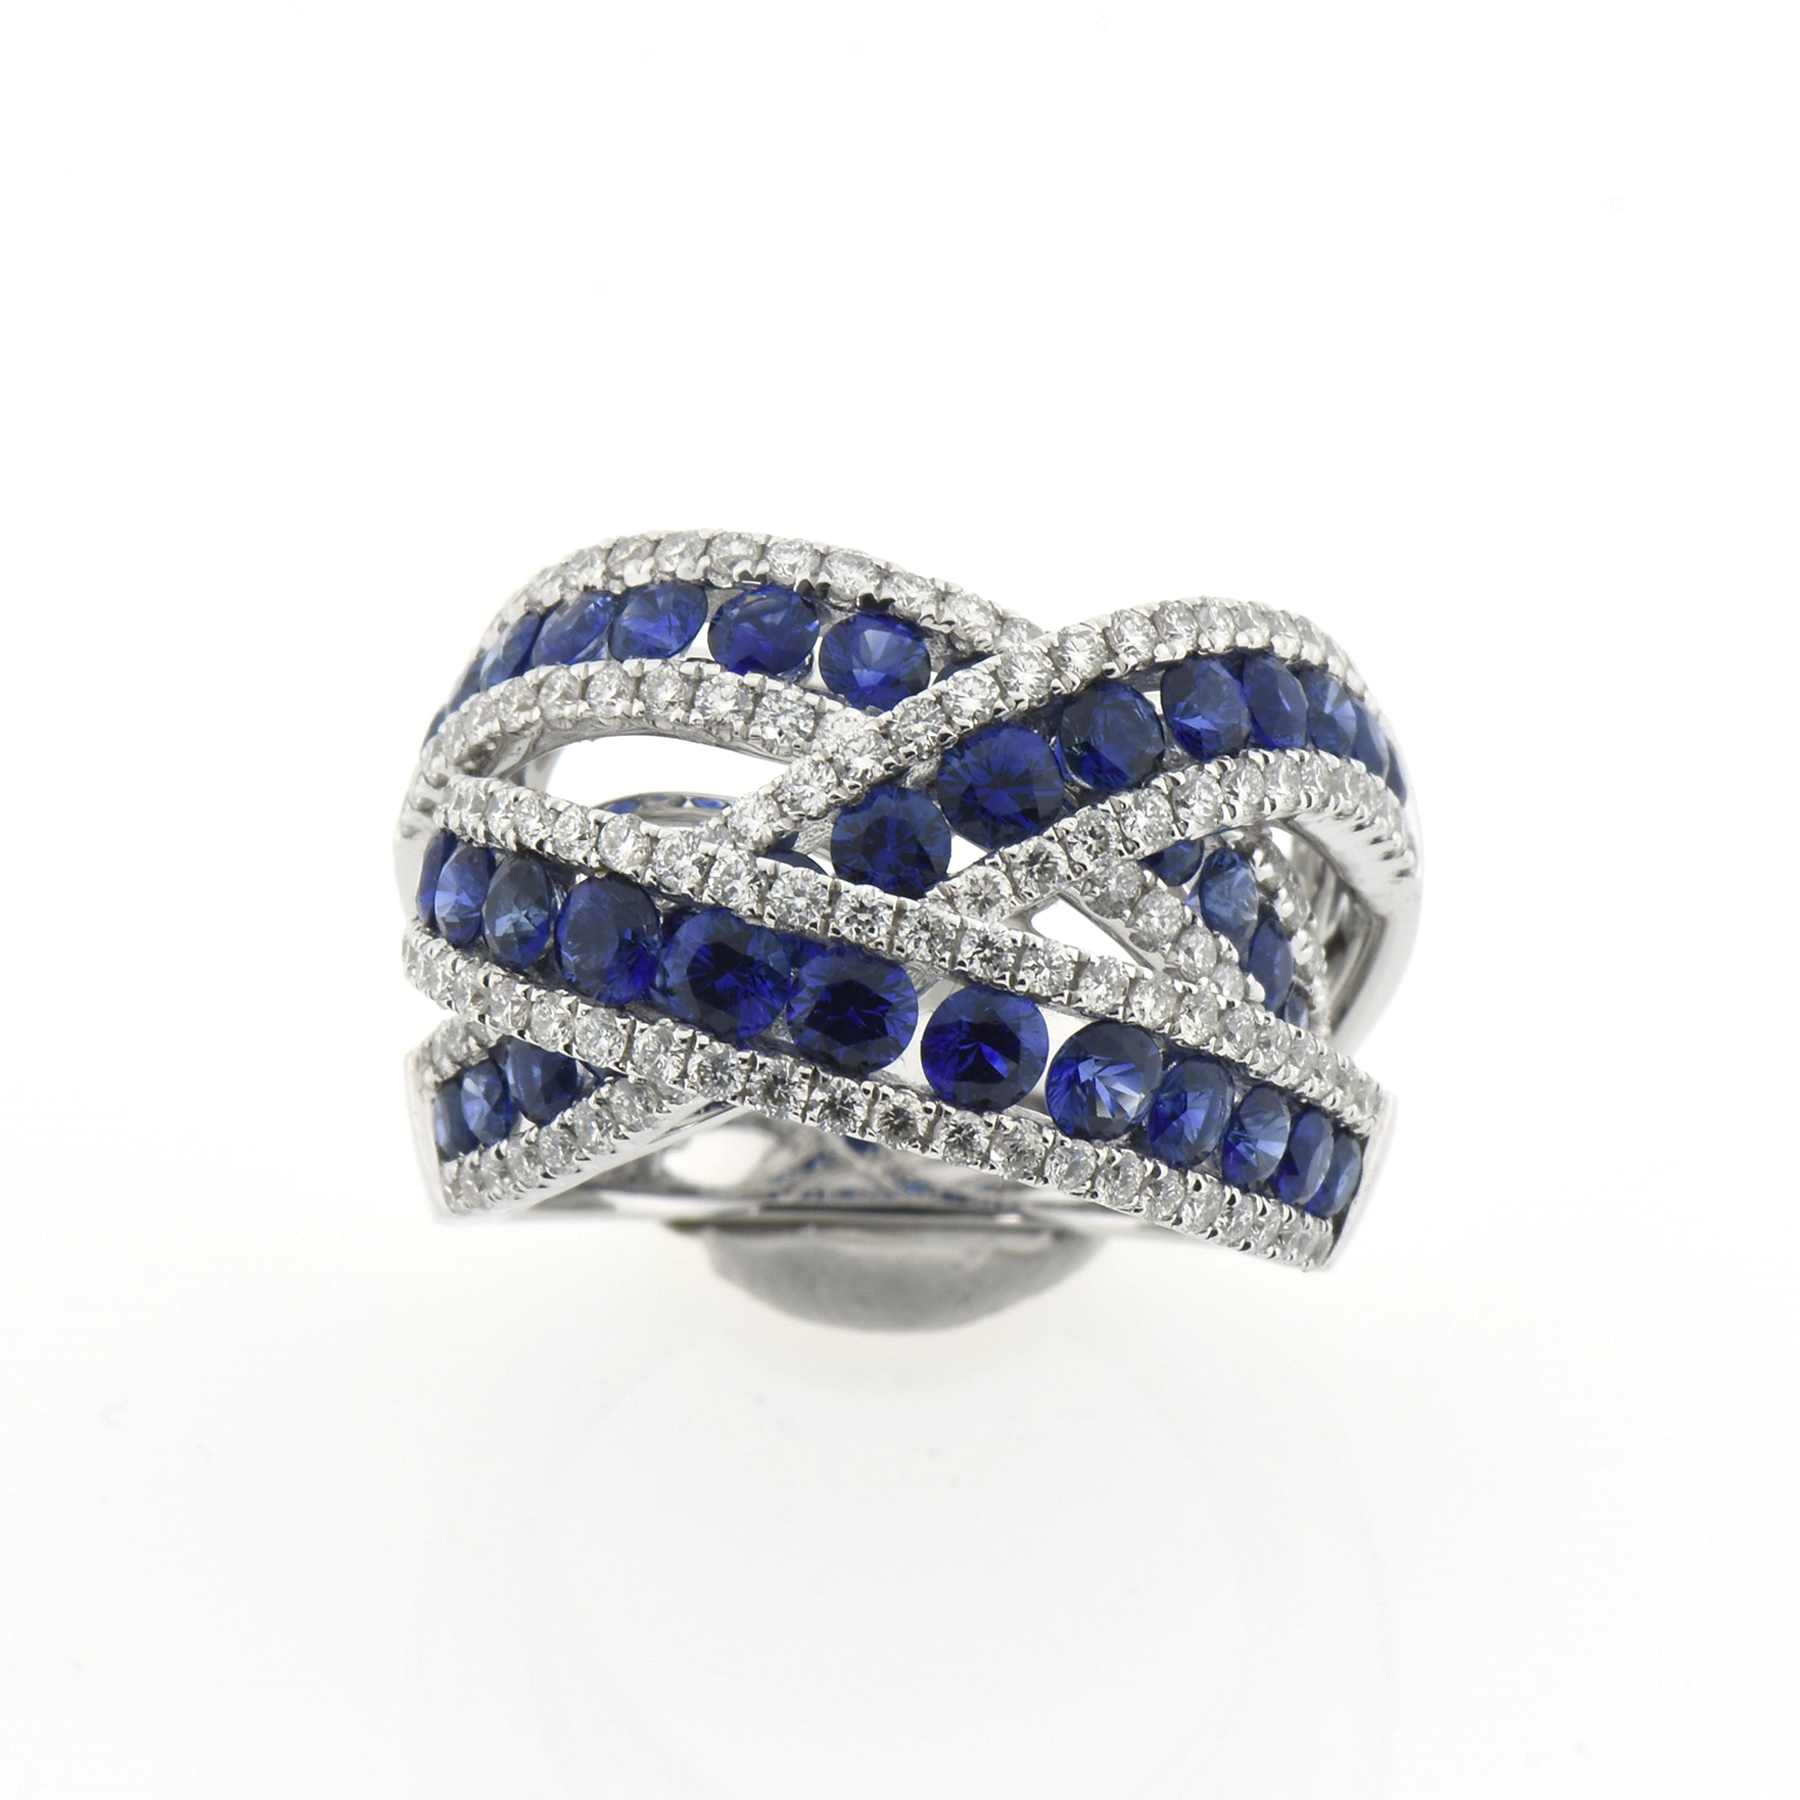 Govoni Gioielli Anello zaffiro Oro 750 % diamanti 1,39 ct Fvvs1 Zaffiri blu naturali 3,19 ct-gioielleria-cipolla-palermo